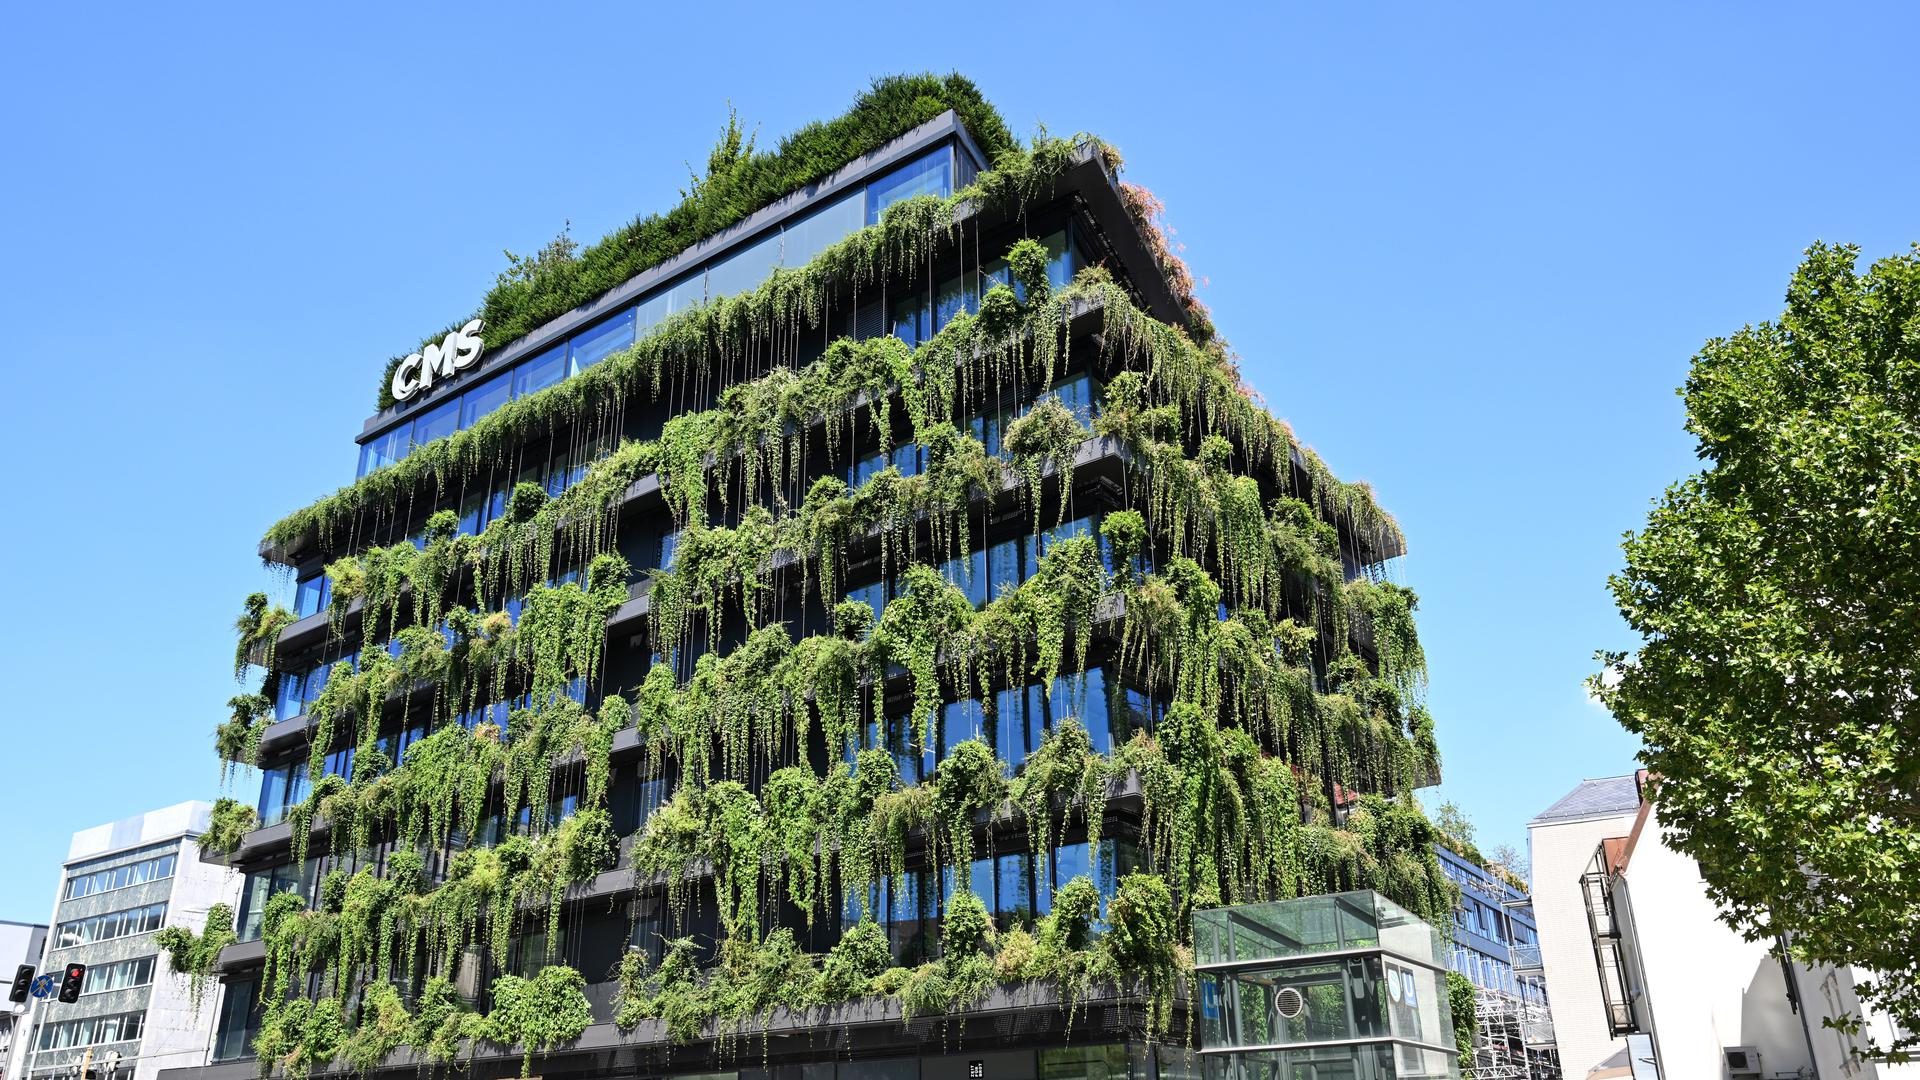 Architektur neu gedacht: Häuser mit komplett begrünten Fassaden, wie hier in der Innenstadt von Stuttgart, sind eine Option, um dem Klimawandel zu begegnen.